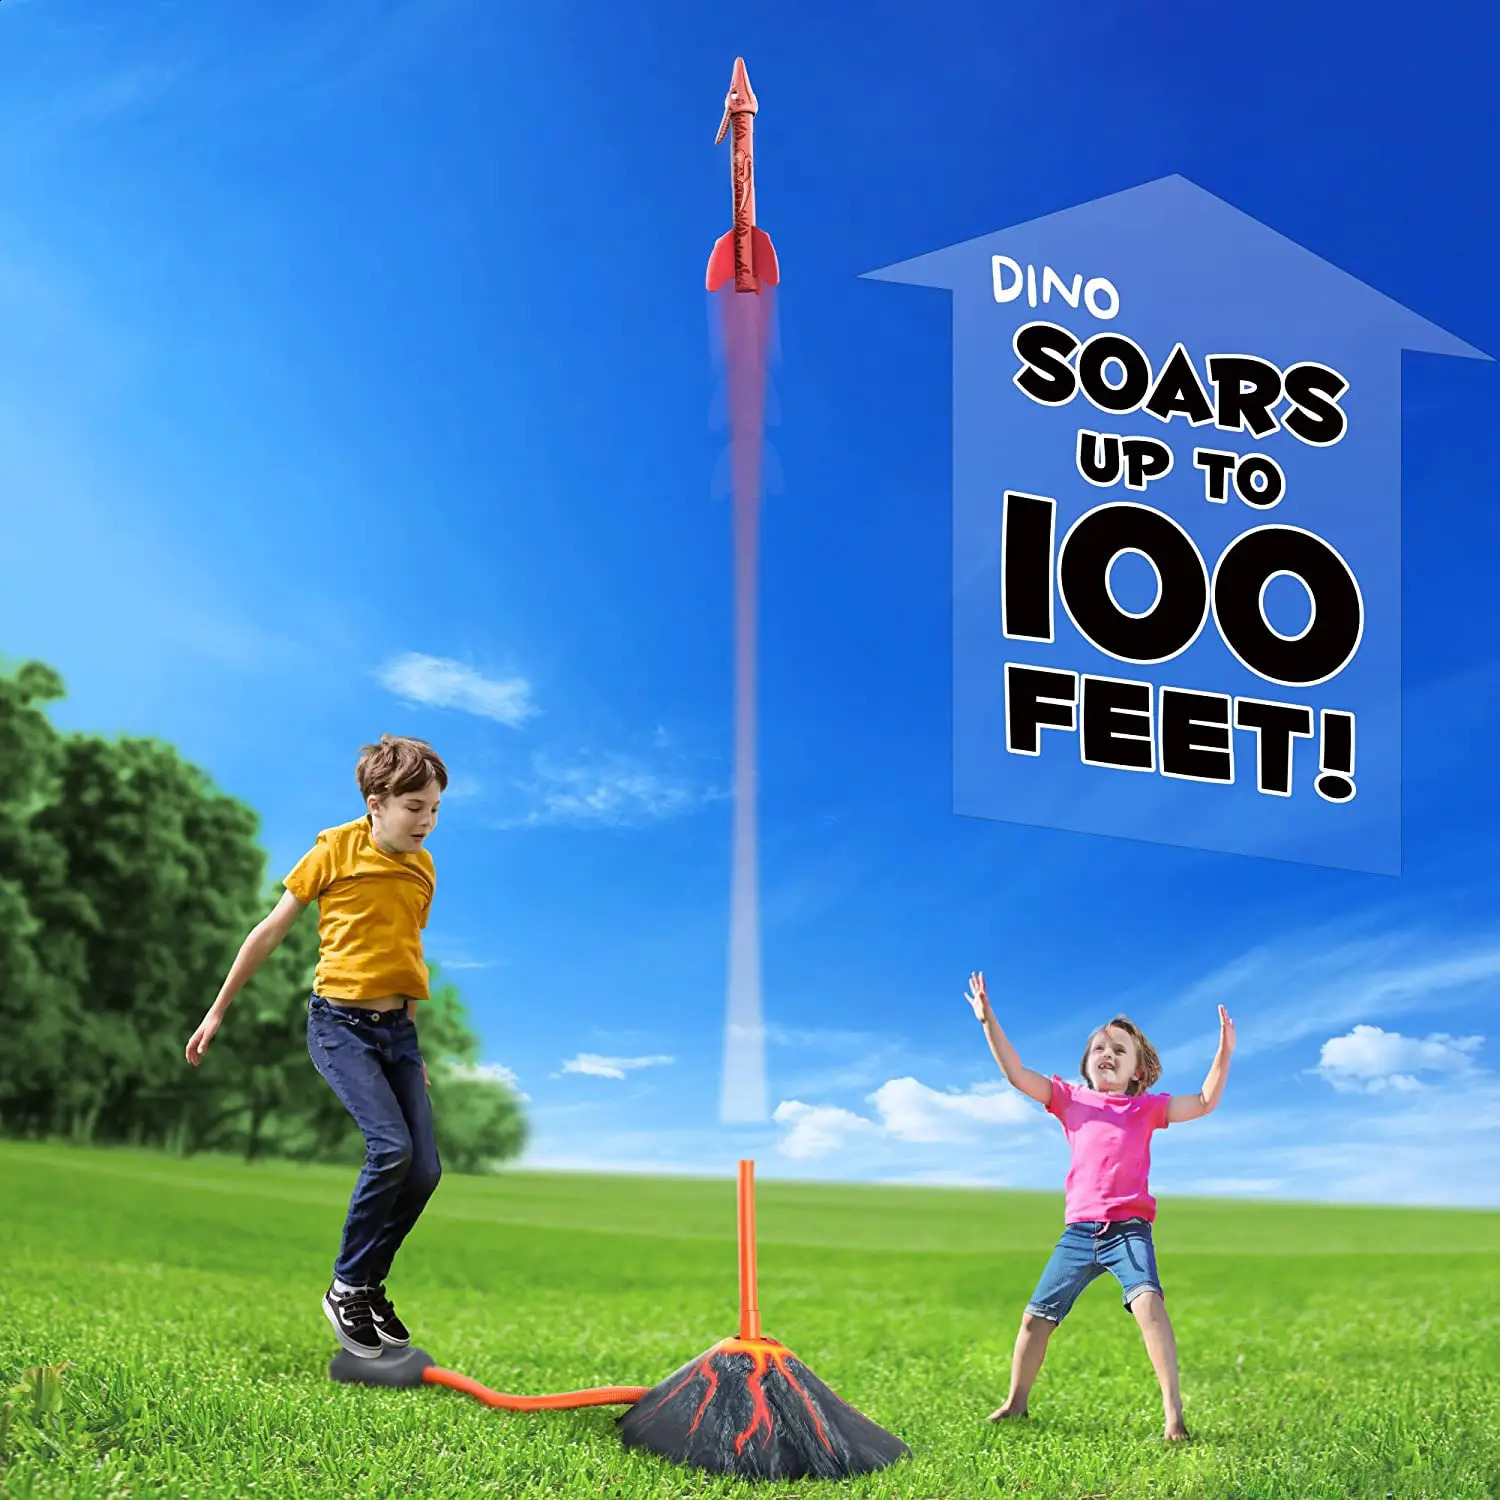 Rocket ER dla dzieci sportowe zabawki na świeżym powietrzu dla chłopców wiek 3 4 5 6 7 lat do 100 stóp 240202